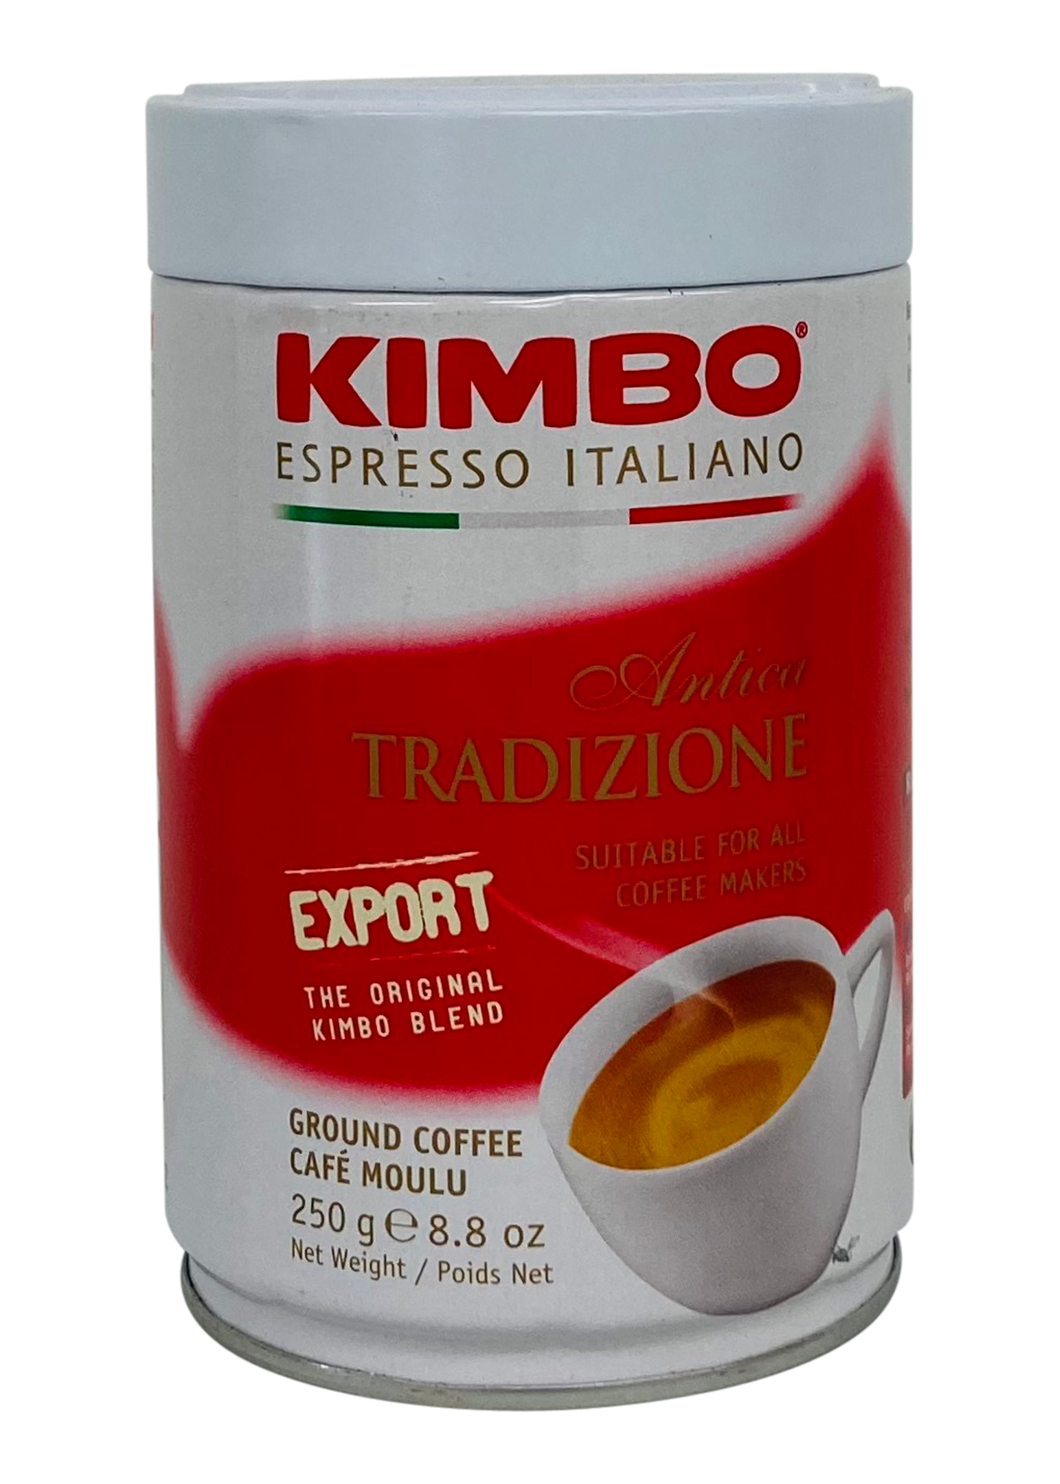 Kimbo Espresso Antica Tradizione